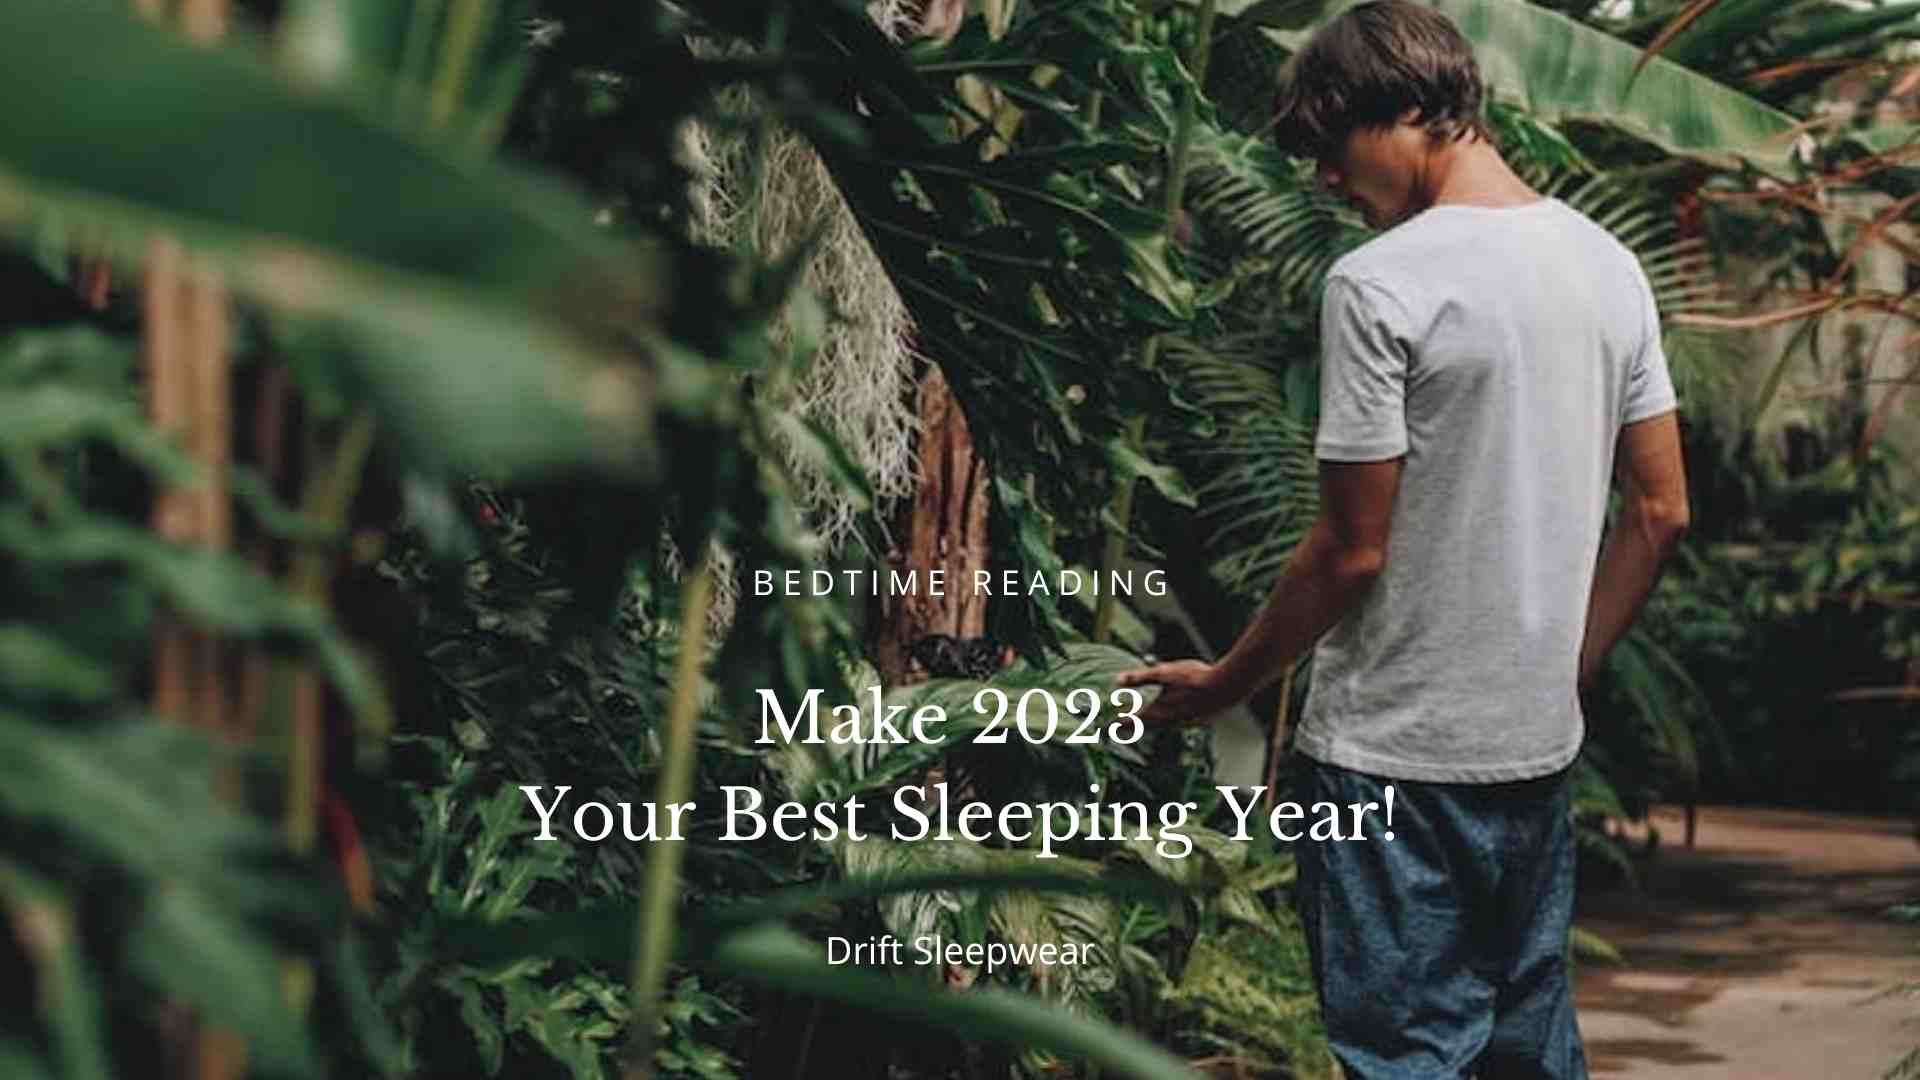 Make 2023 Your Best Sleeping Year Guide From Drift Sleepwear